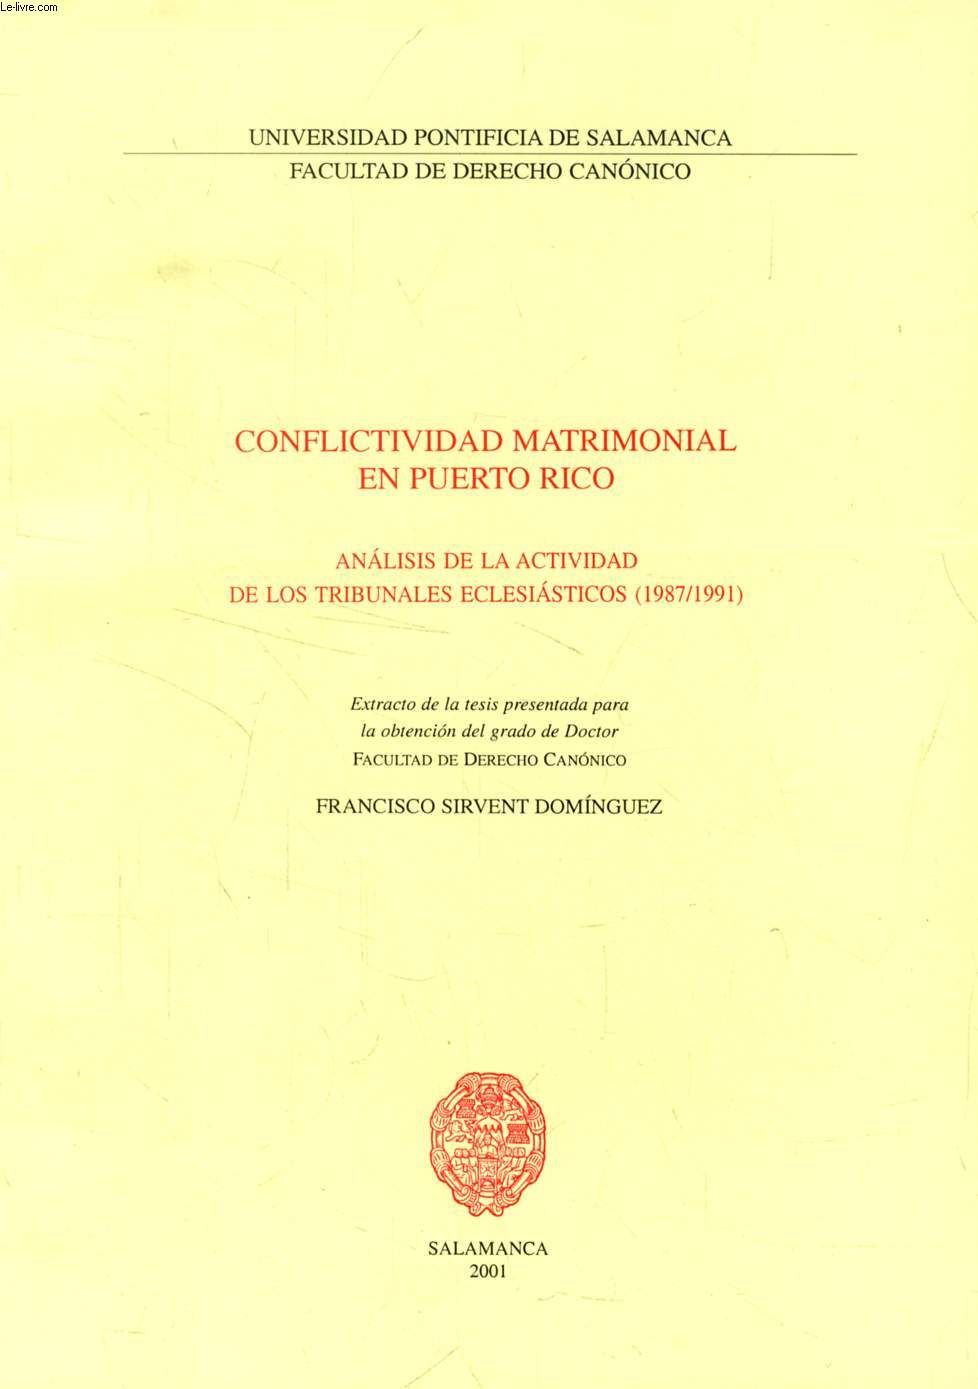 CONFLICTIVIDAD MATRIMONIAL EN PUERTO RICO, ANALISIS DE LA ACTIVIDAD DE LOS TRIBUNALES ECLESIASTICOS (1987/1991) (EXTRACTO DE LA TESIS)